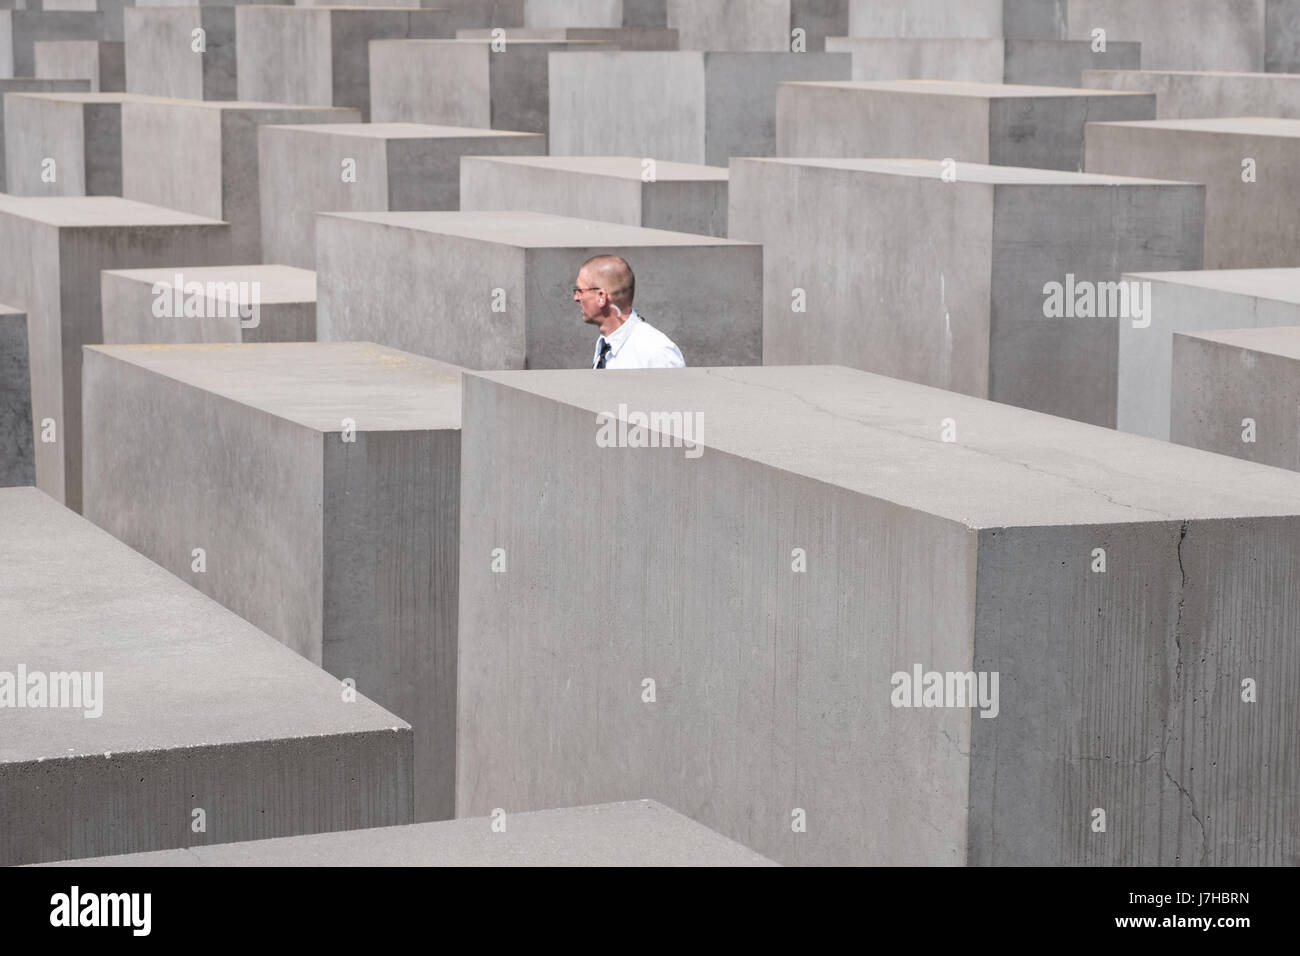 Berlin, Deutschland - 23. Mai 2017: Wachmann in der Gedenkstätte für die ermordeten Juden Europas, auch bekannt als das Holocaust-Mahnmal in Berlin. Stockfoto